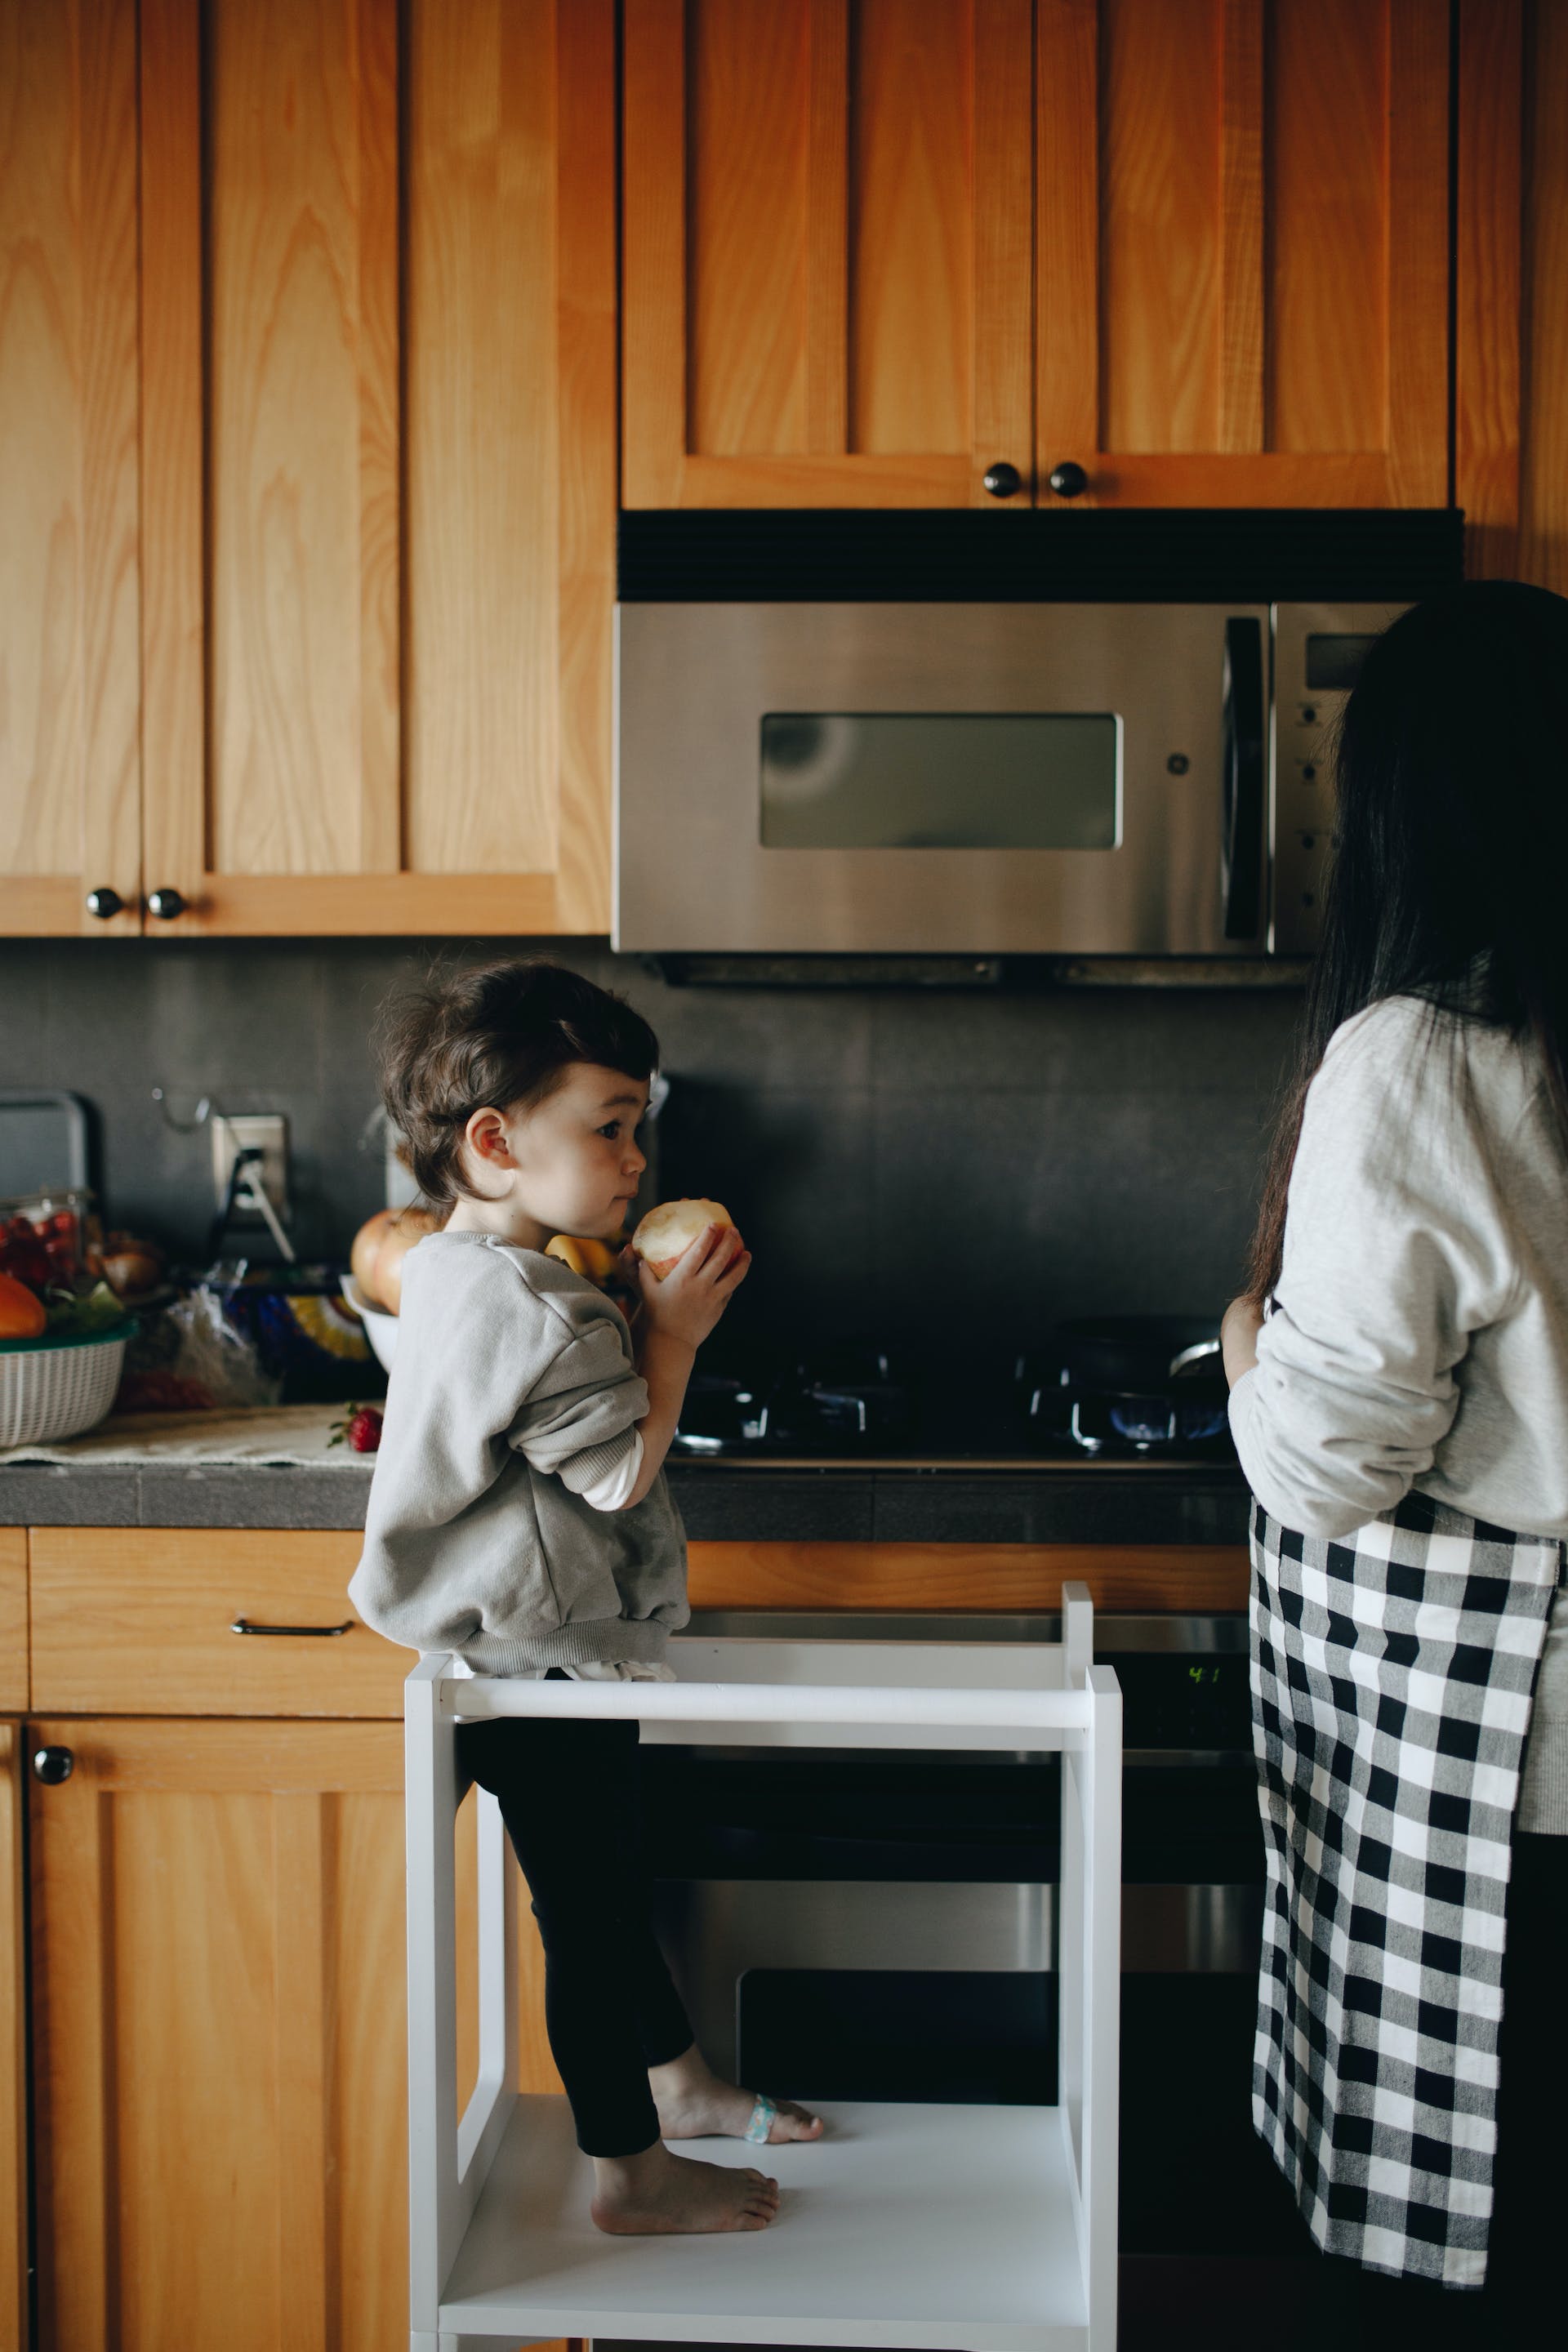 Un petit garçon debout à côté de sa maman dans la cuisine | Source : Pexels